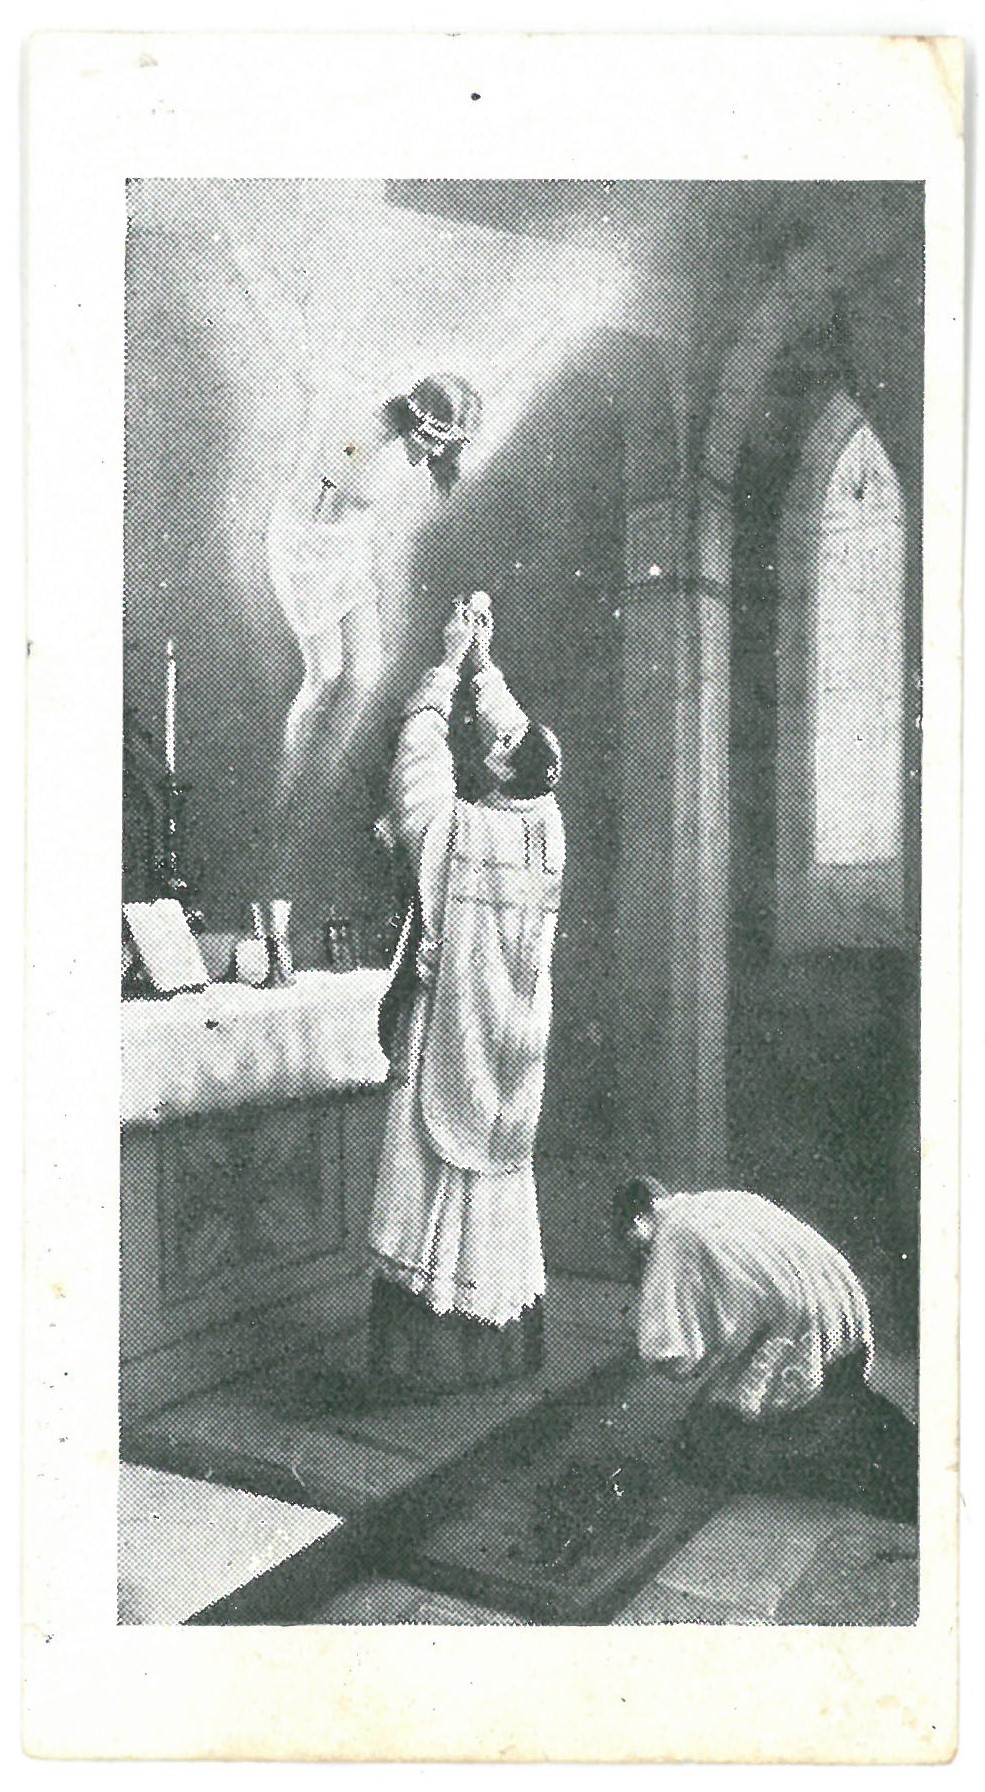 Religinis paveikslėlis – „Lurdo“ priedas. Priekinėje pusėje – Šv. Mišių vaizdas. Kitoje paveikslėlio pusėje – malda už mirusius